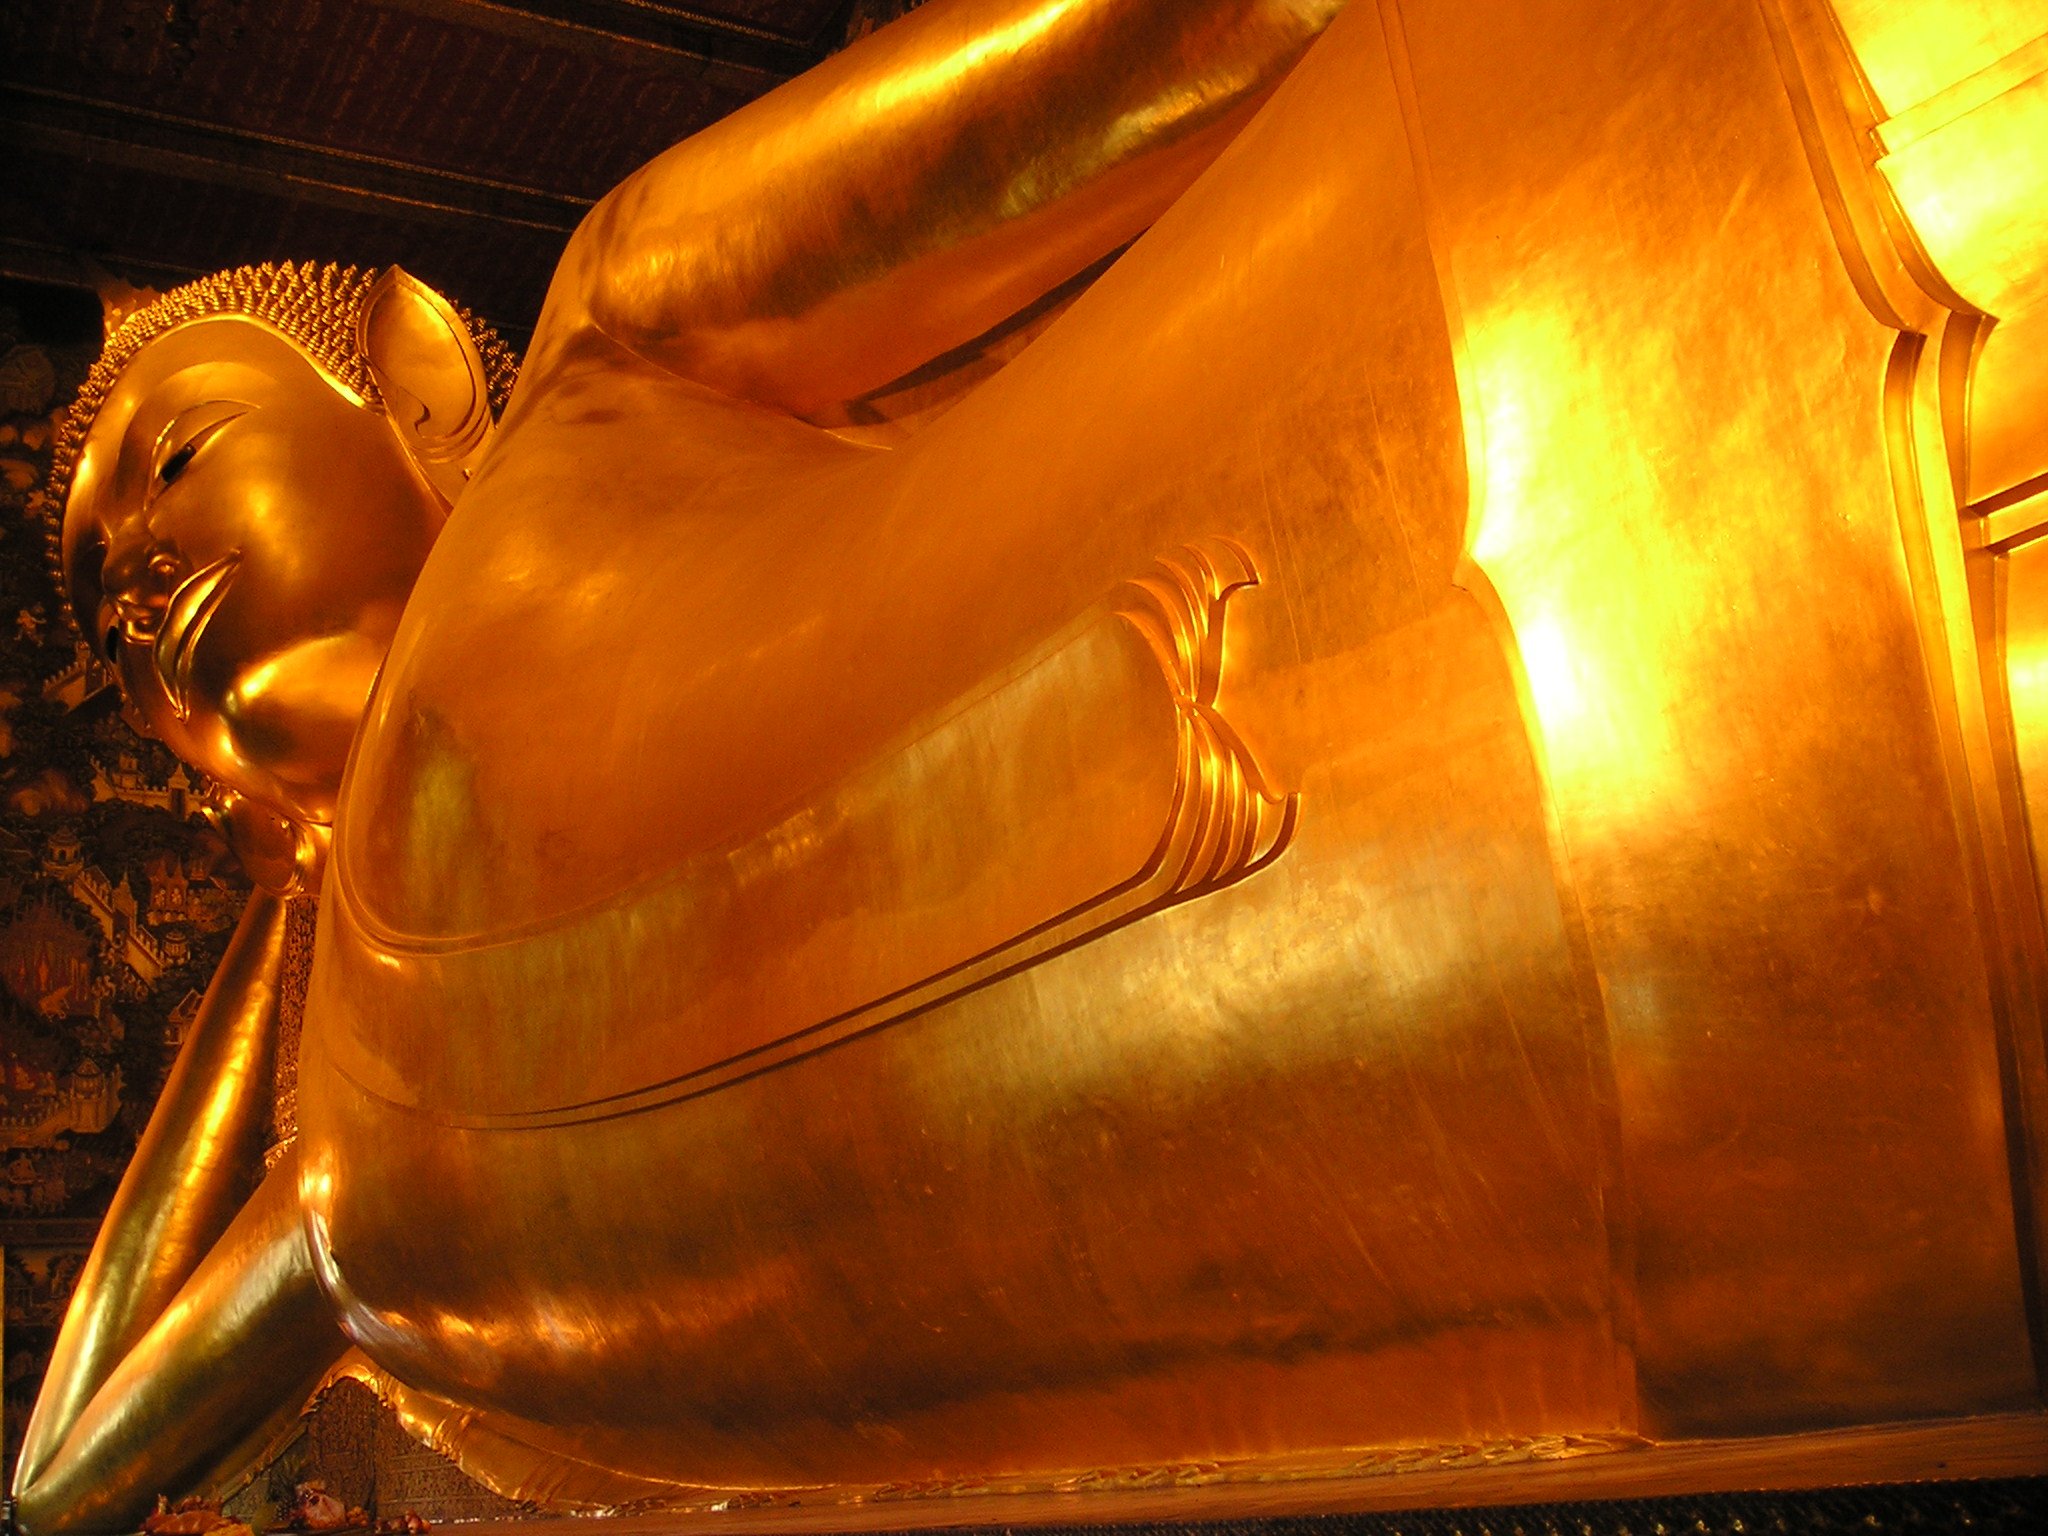 золотой будда в бангкоке